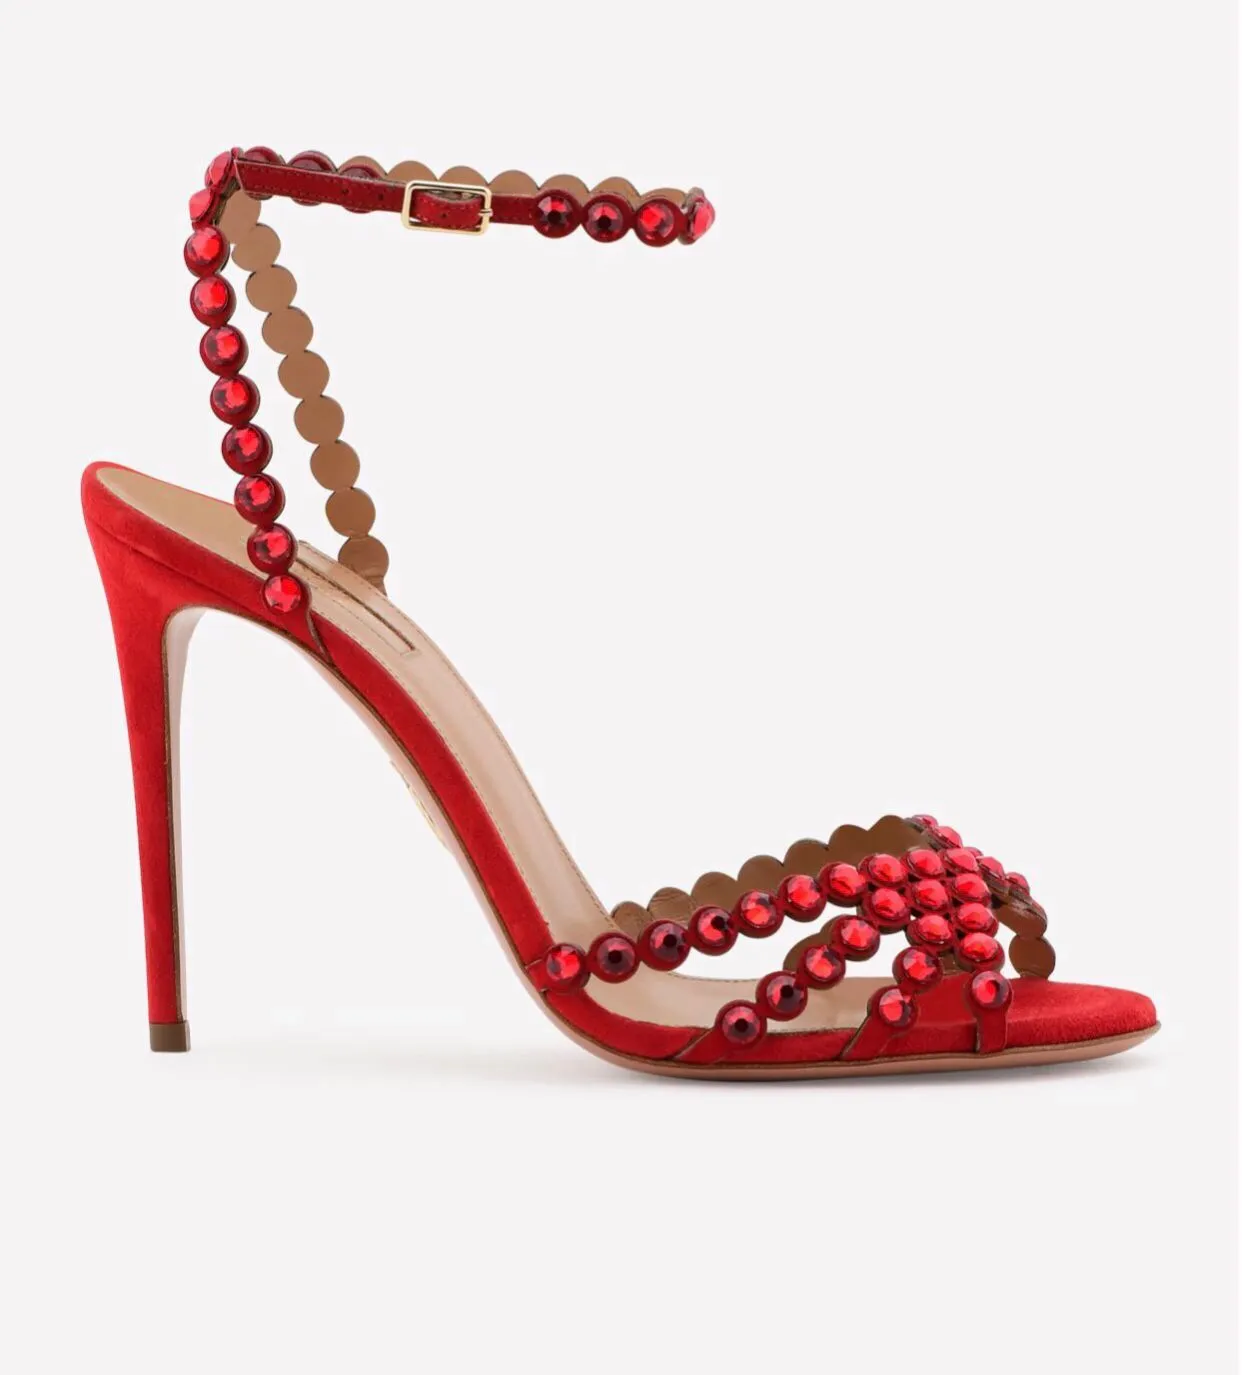 Nouveau usage quotidien Tequila cuir sandales chaussures pour femmes rouge à bretelles conception cristal embellissements femme talons hauts sexy fête chaussure de mariage AQ115